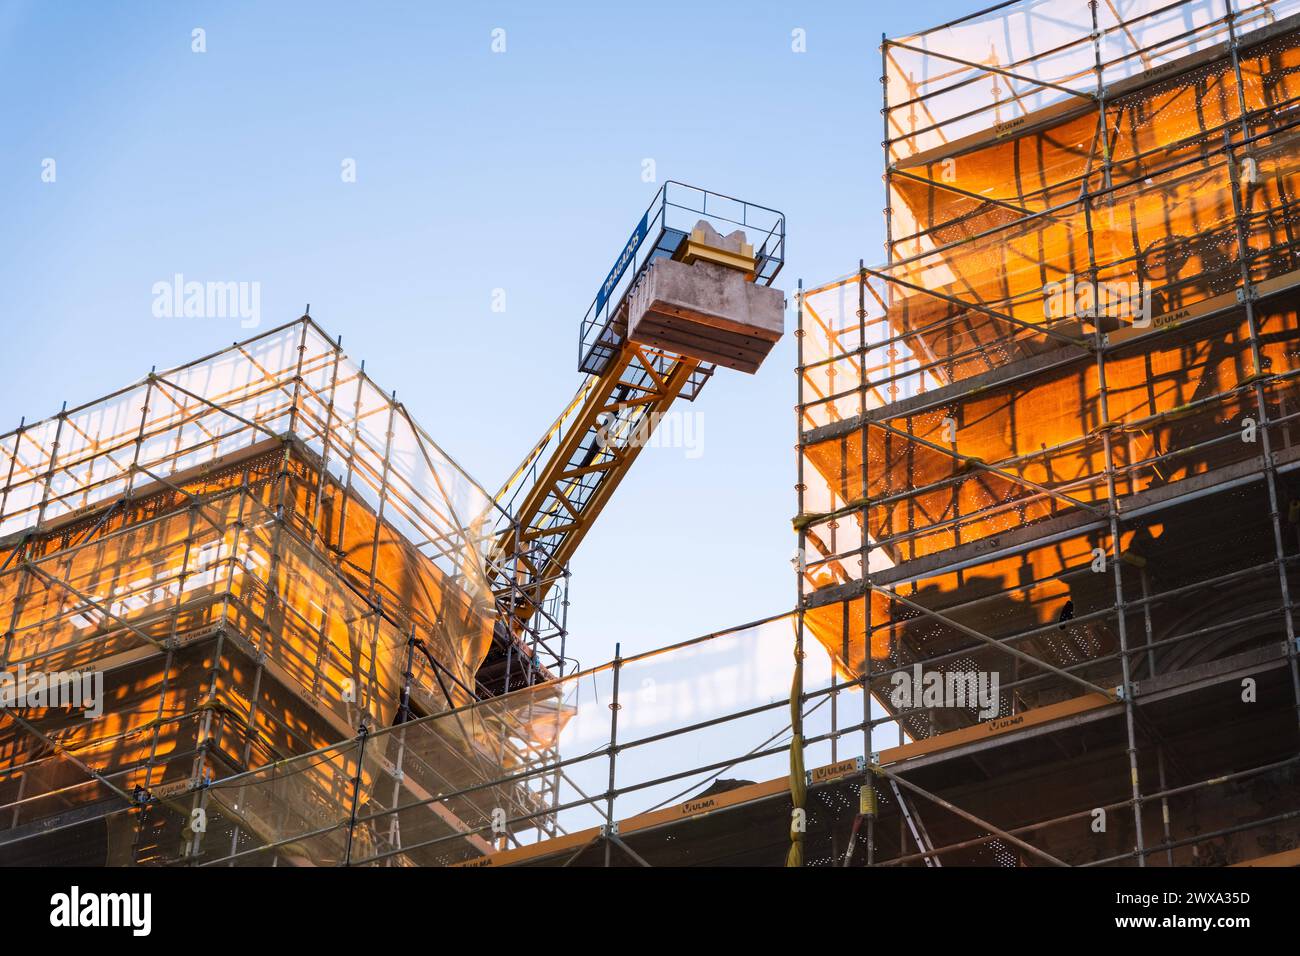 Gerüst und Kran an einer Baustelle im alten Hafen von Barcelona, Spanien Barcelona Katalonien Spanien *** Scaffolding and crane at a construction site Stock Photo